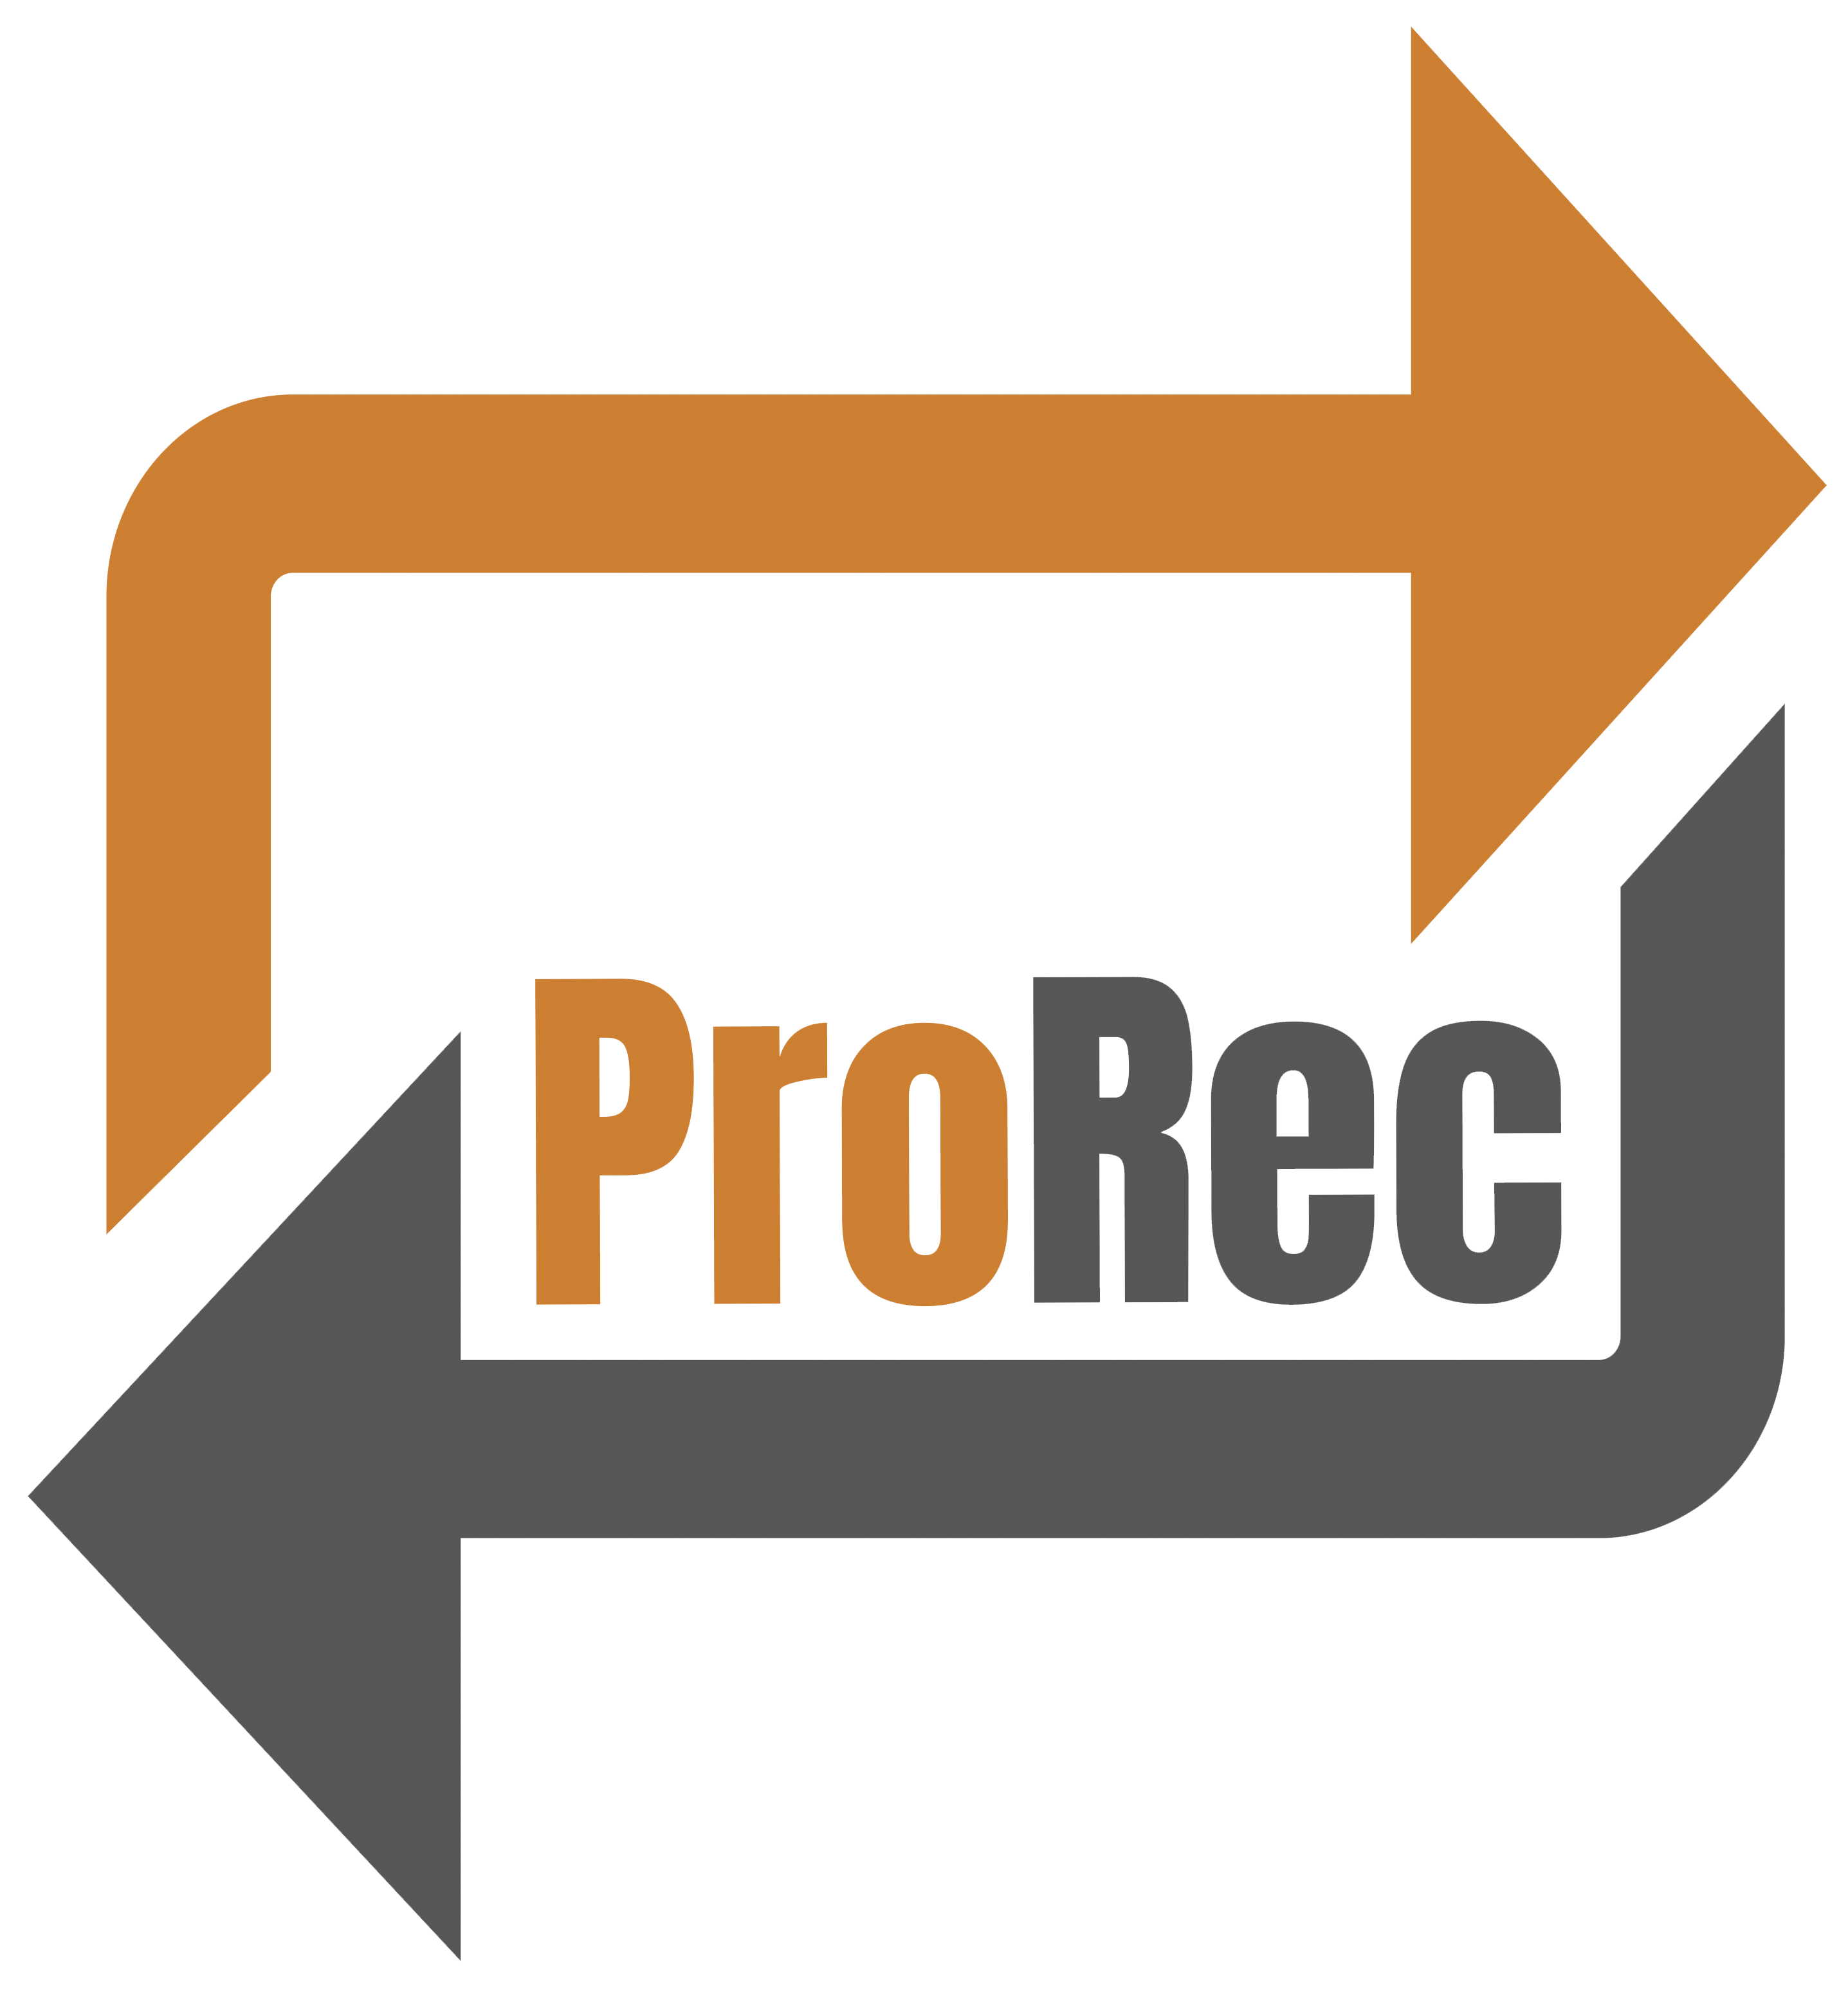 PROREC GmbH